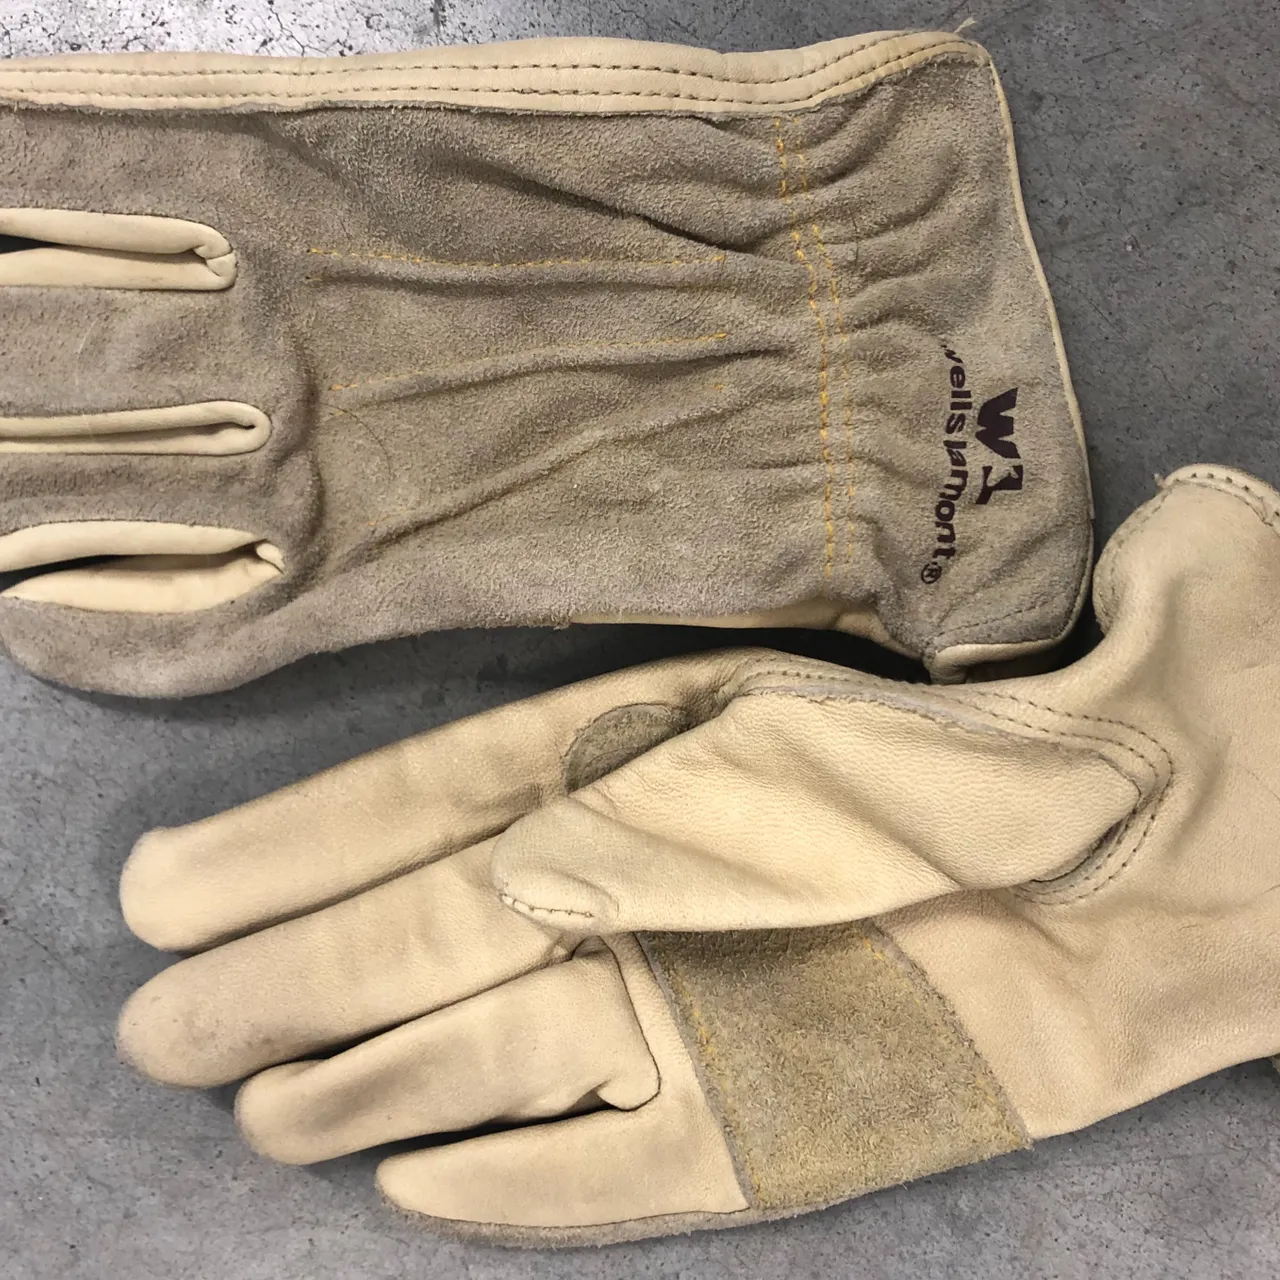 Work gloves photo 1